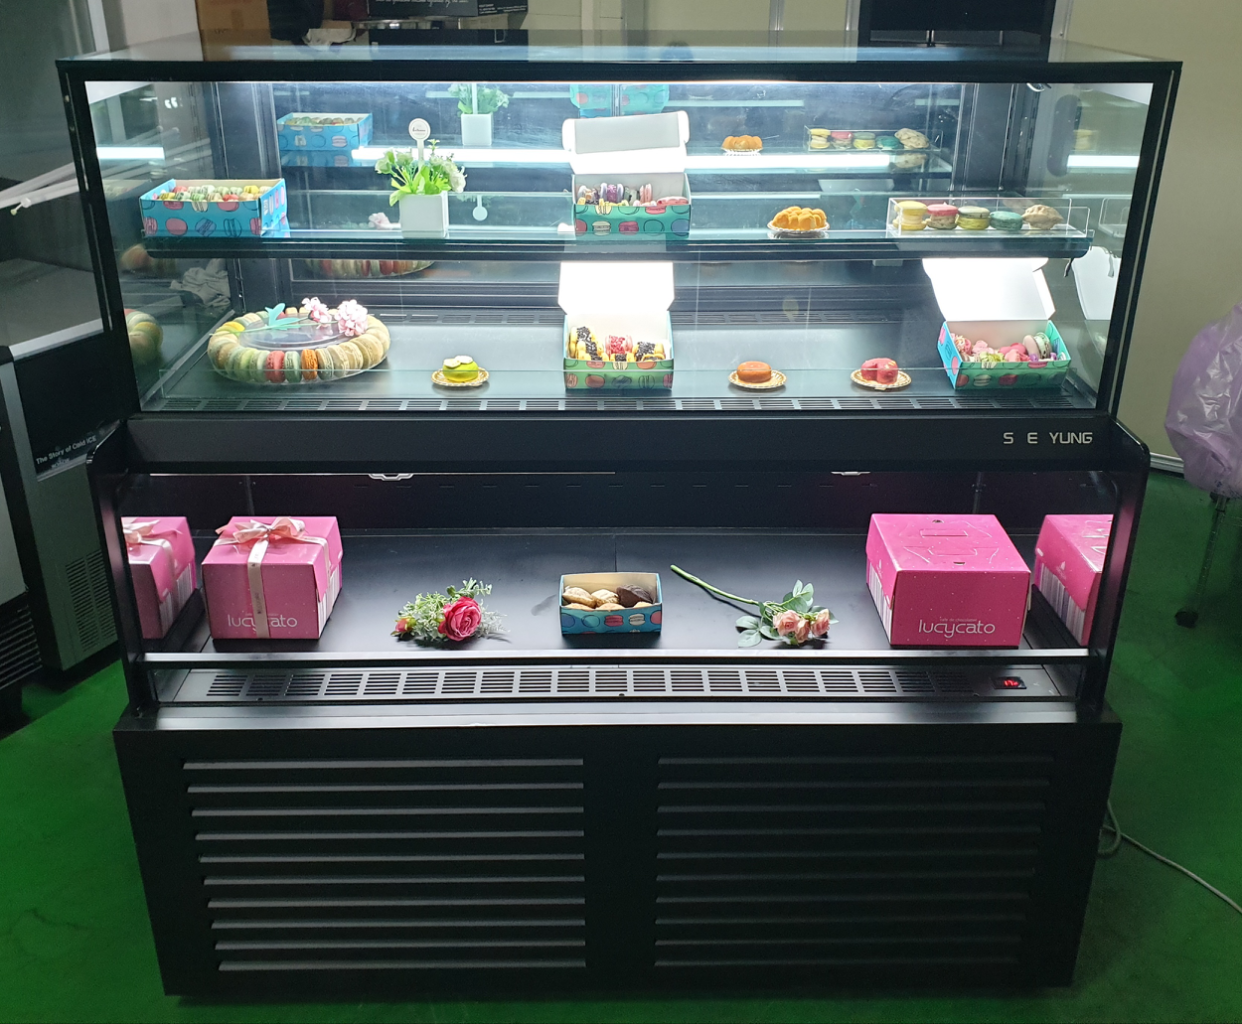 카페용 콤비 케익 디저트 베이커리 반찬 냉장 쇼케이스